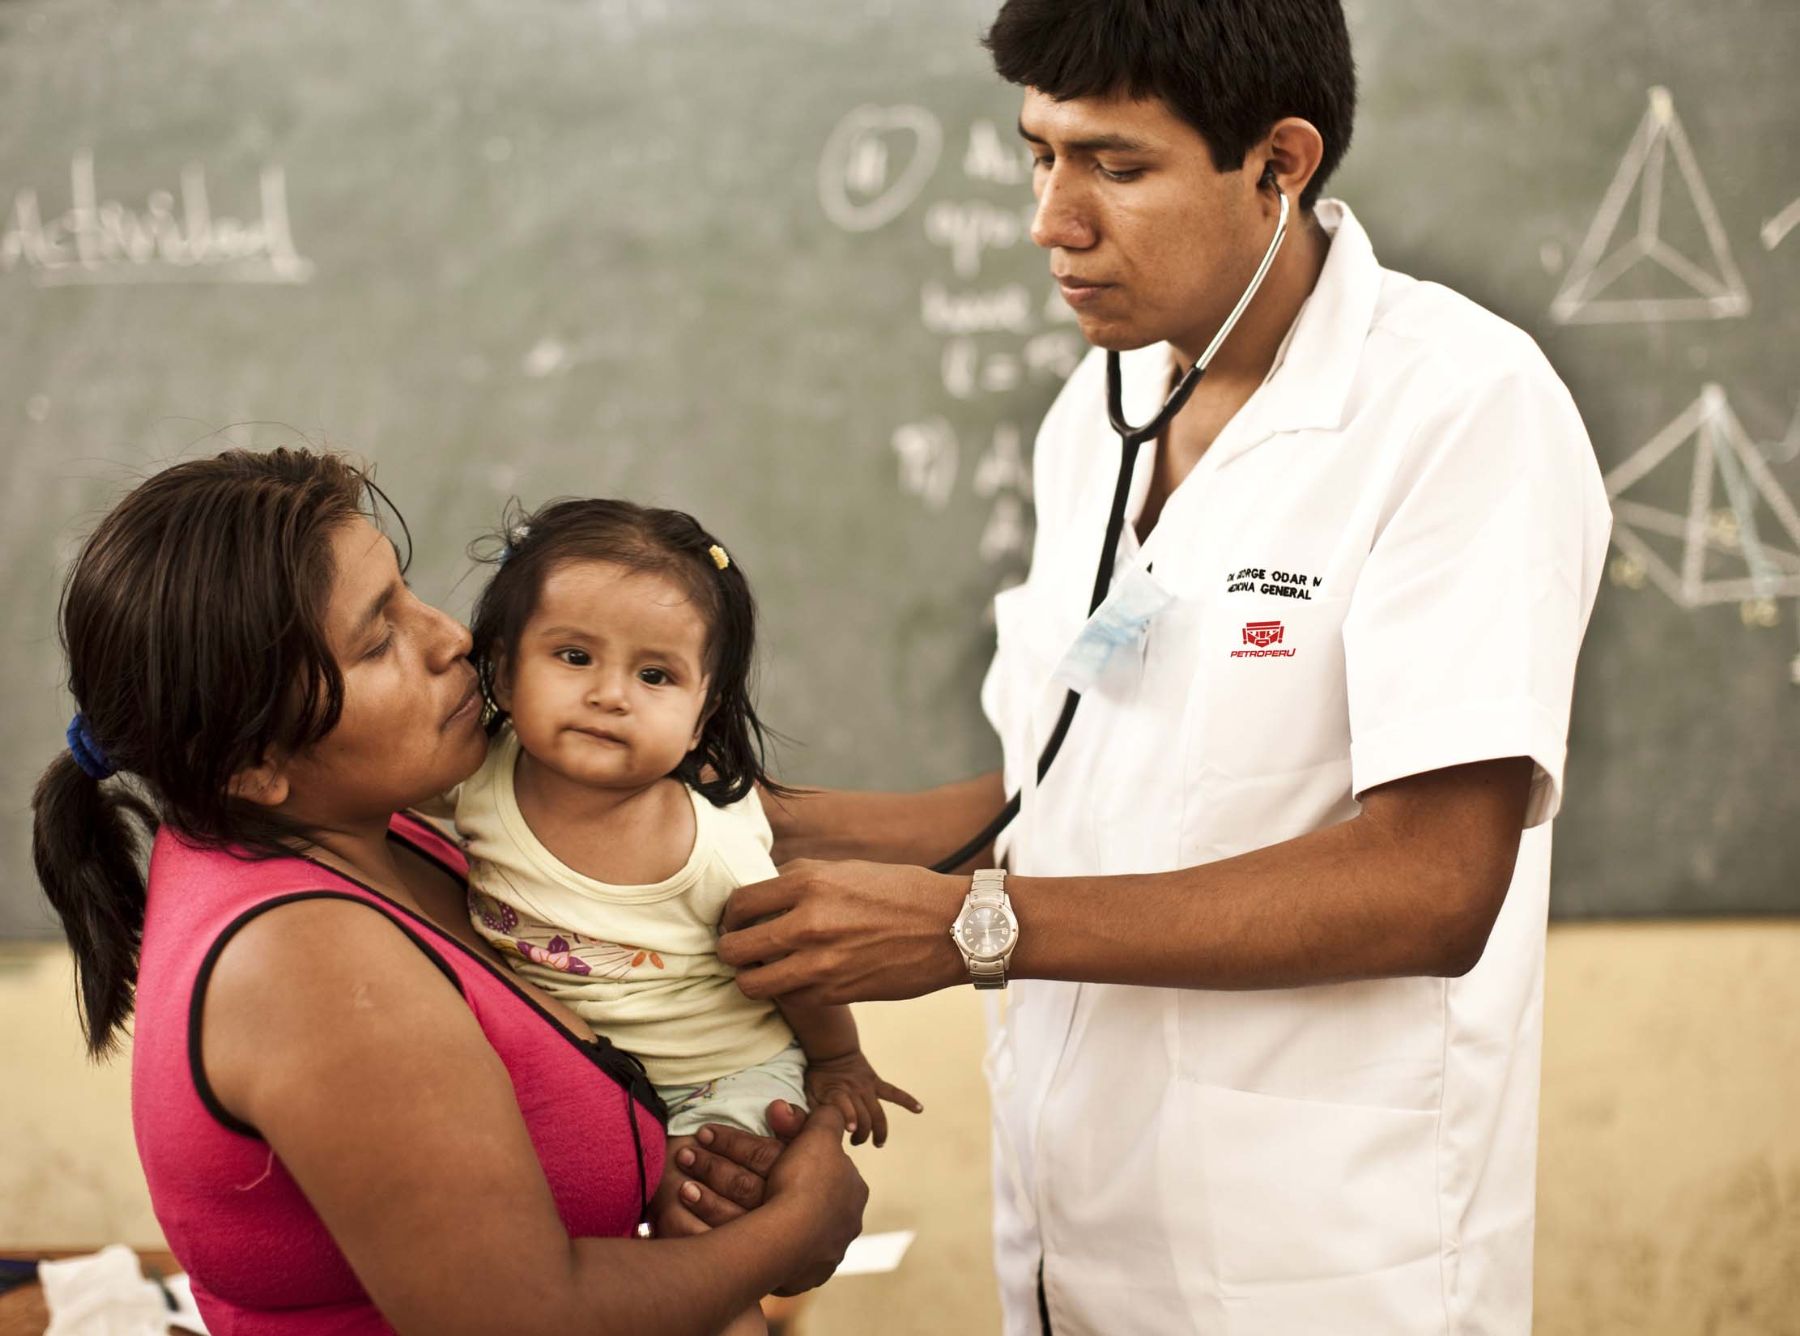 Minsa reafirma su compromiso de mejorar atención de salud en Amazonas. ANDINA/Difusión